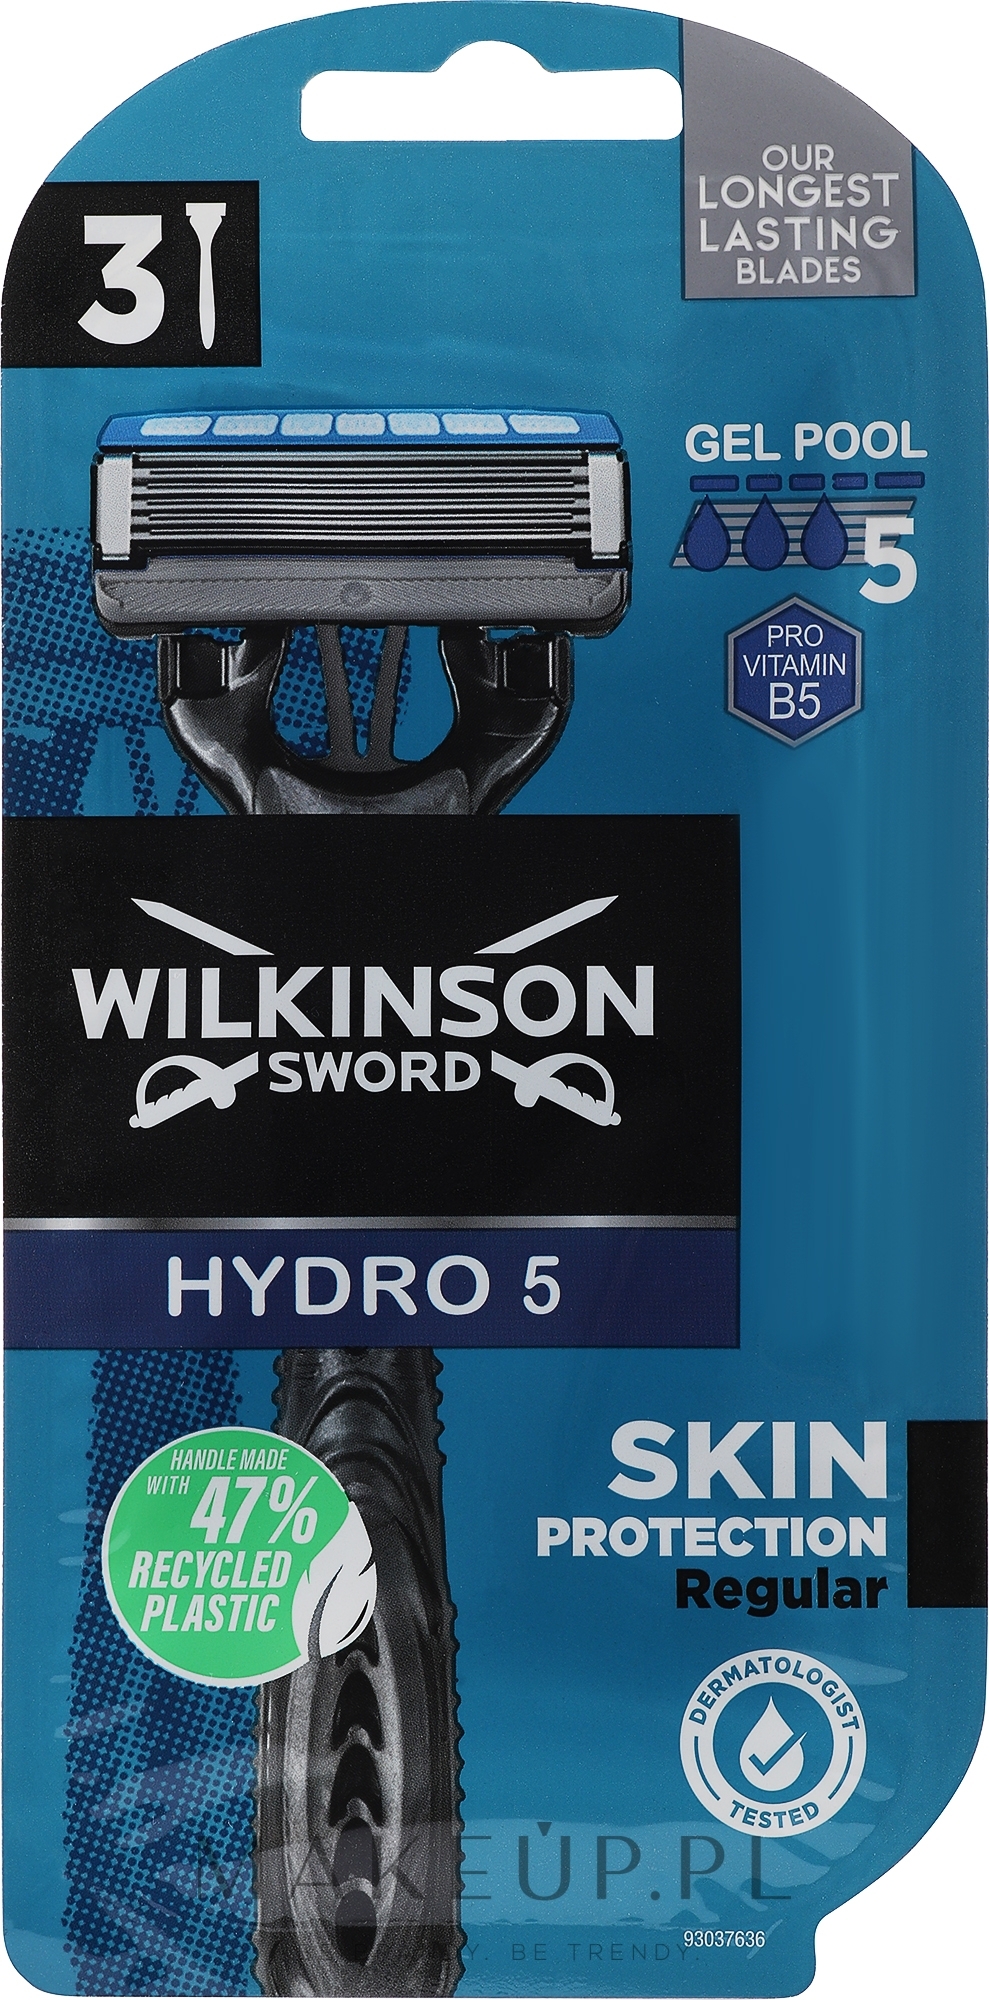 Jednorazowe maszynki do golenia , 3 szt. - Wilkinson Sword Hydro 5 Razor — Zdjęcie 3 szt.